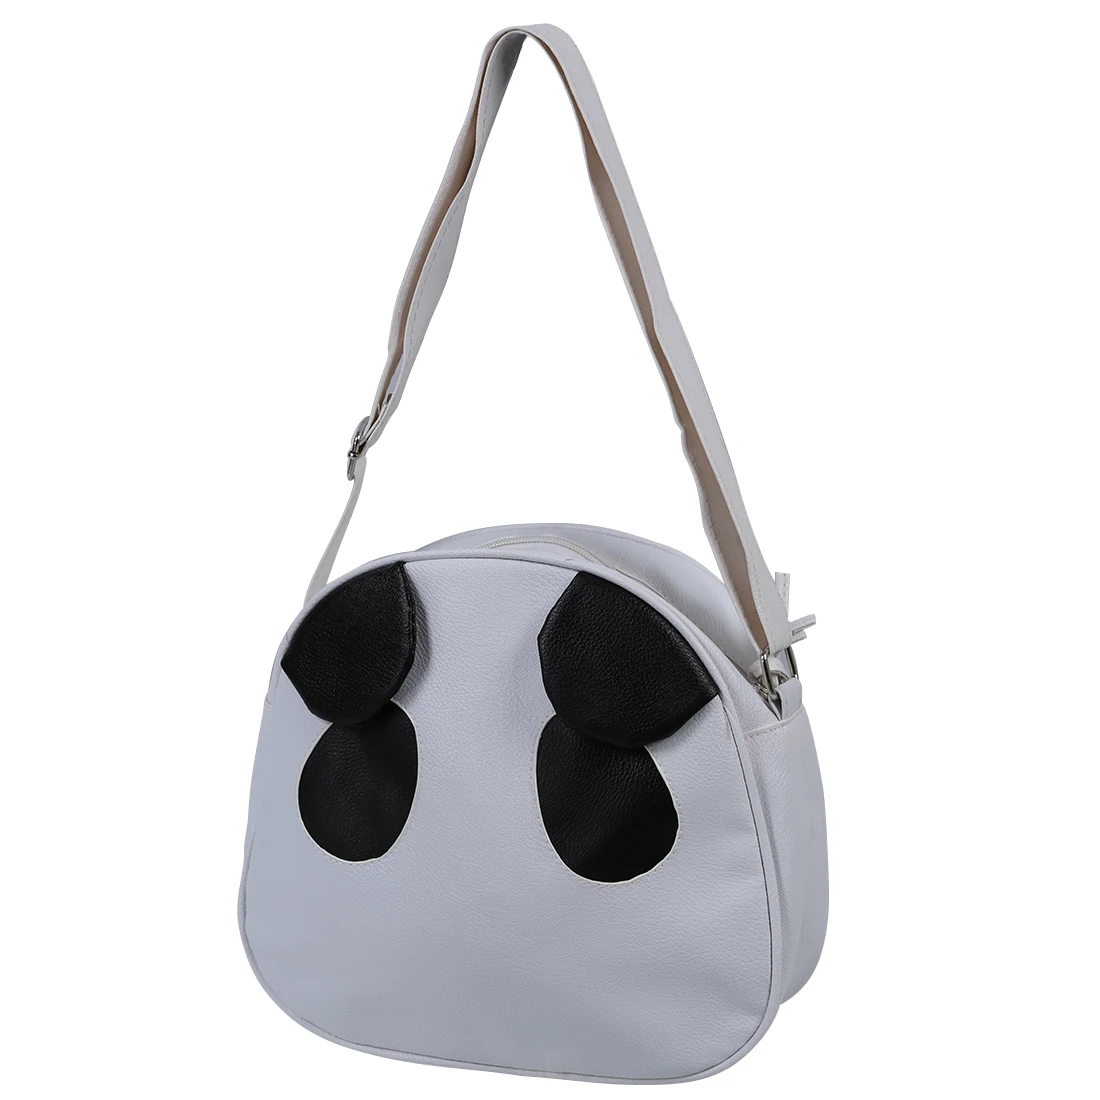 Cute Panda уха девушку Сумочка PU сумка портфель белые модные